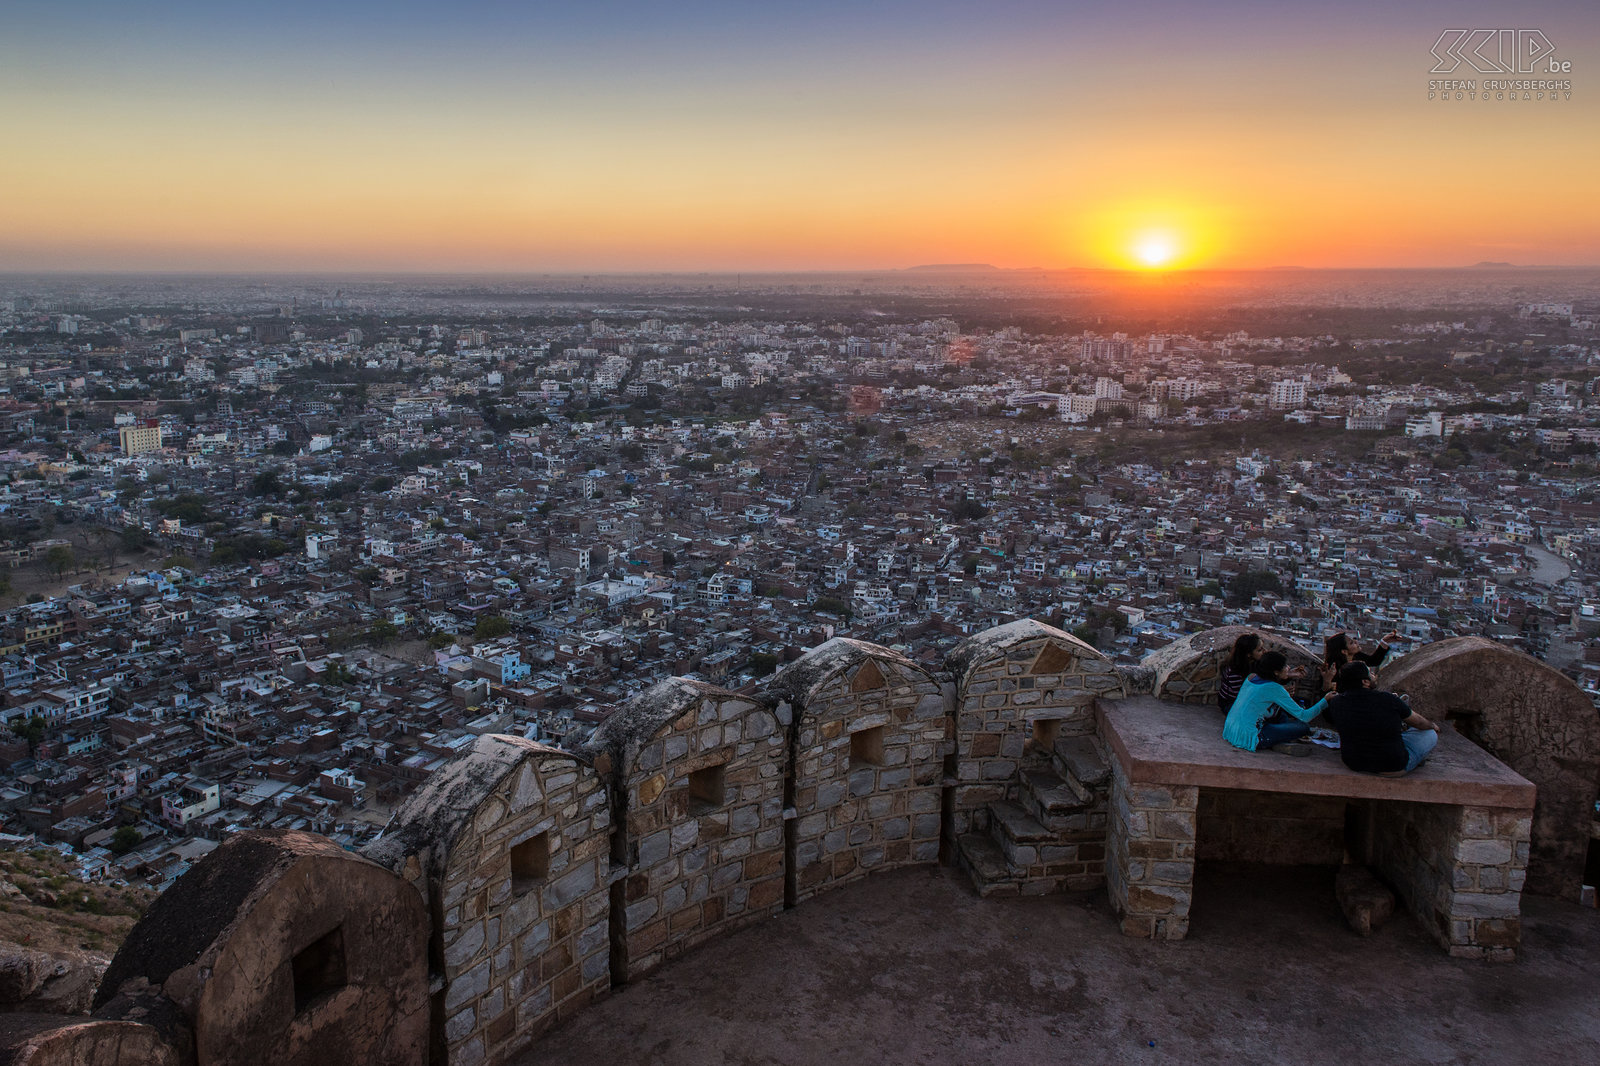 Jaipur - Zonsdondergang vanaf Nahargarh fort Zonsondergang vanaf het Nahargarh fort/Tiger fort. Dit fort hoog gelegen in de Aravalli Hills geeft een prachtig zicht over Jaipur. Stefan Cruysberghs